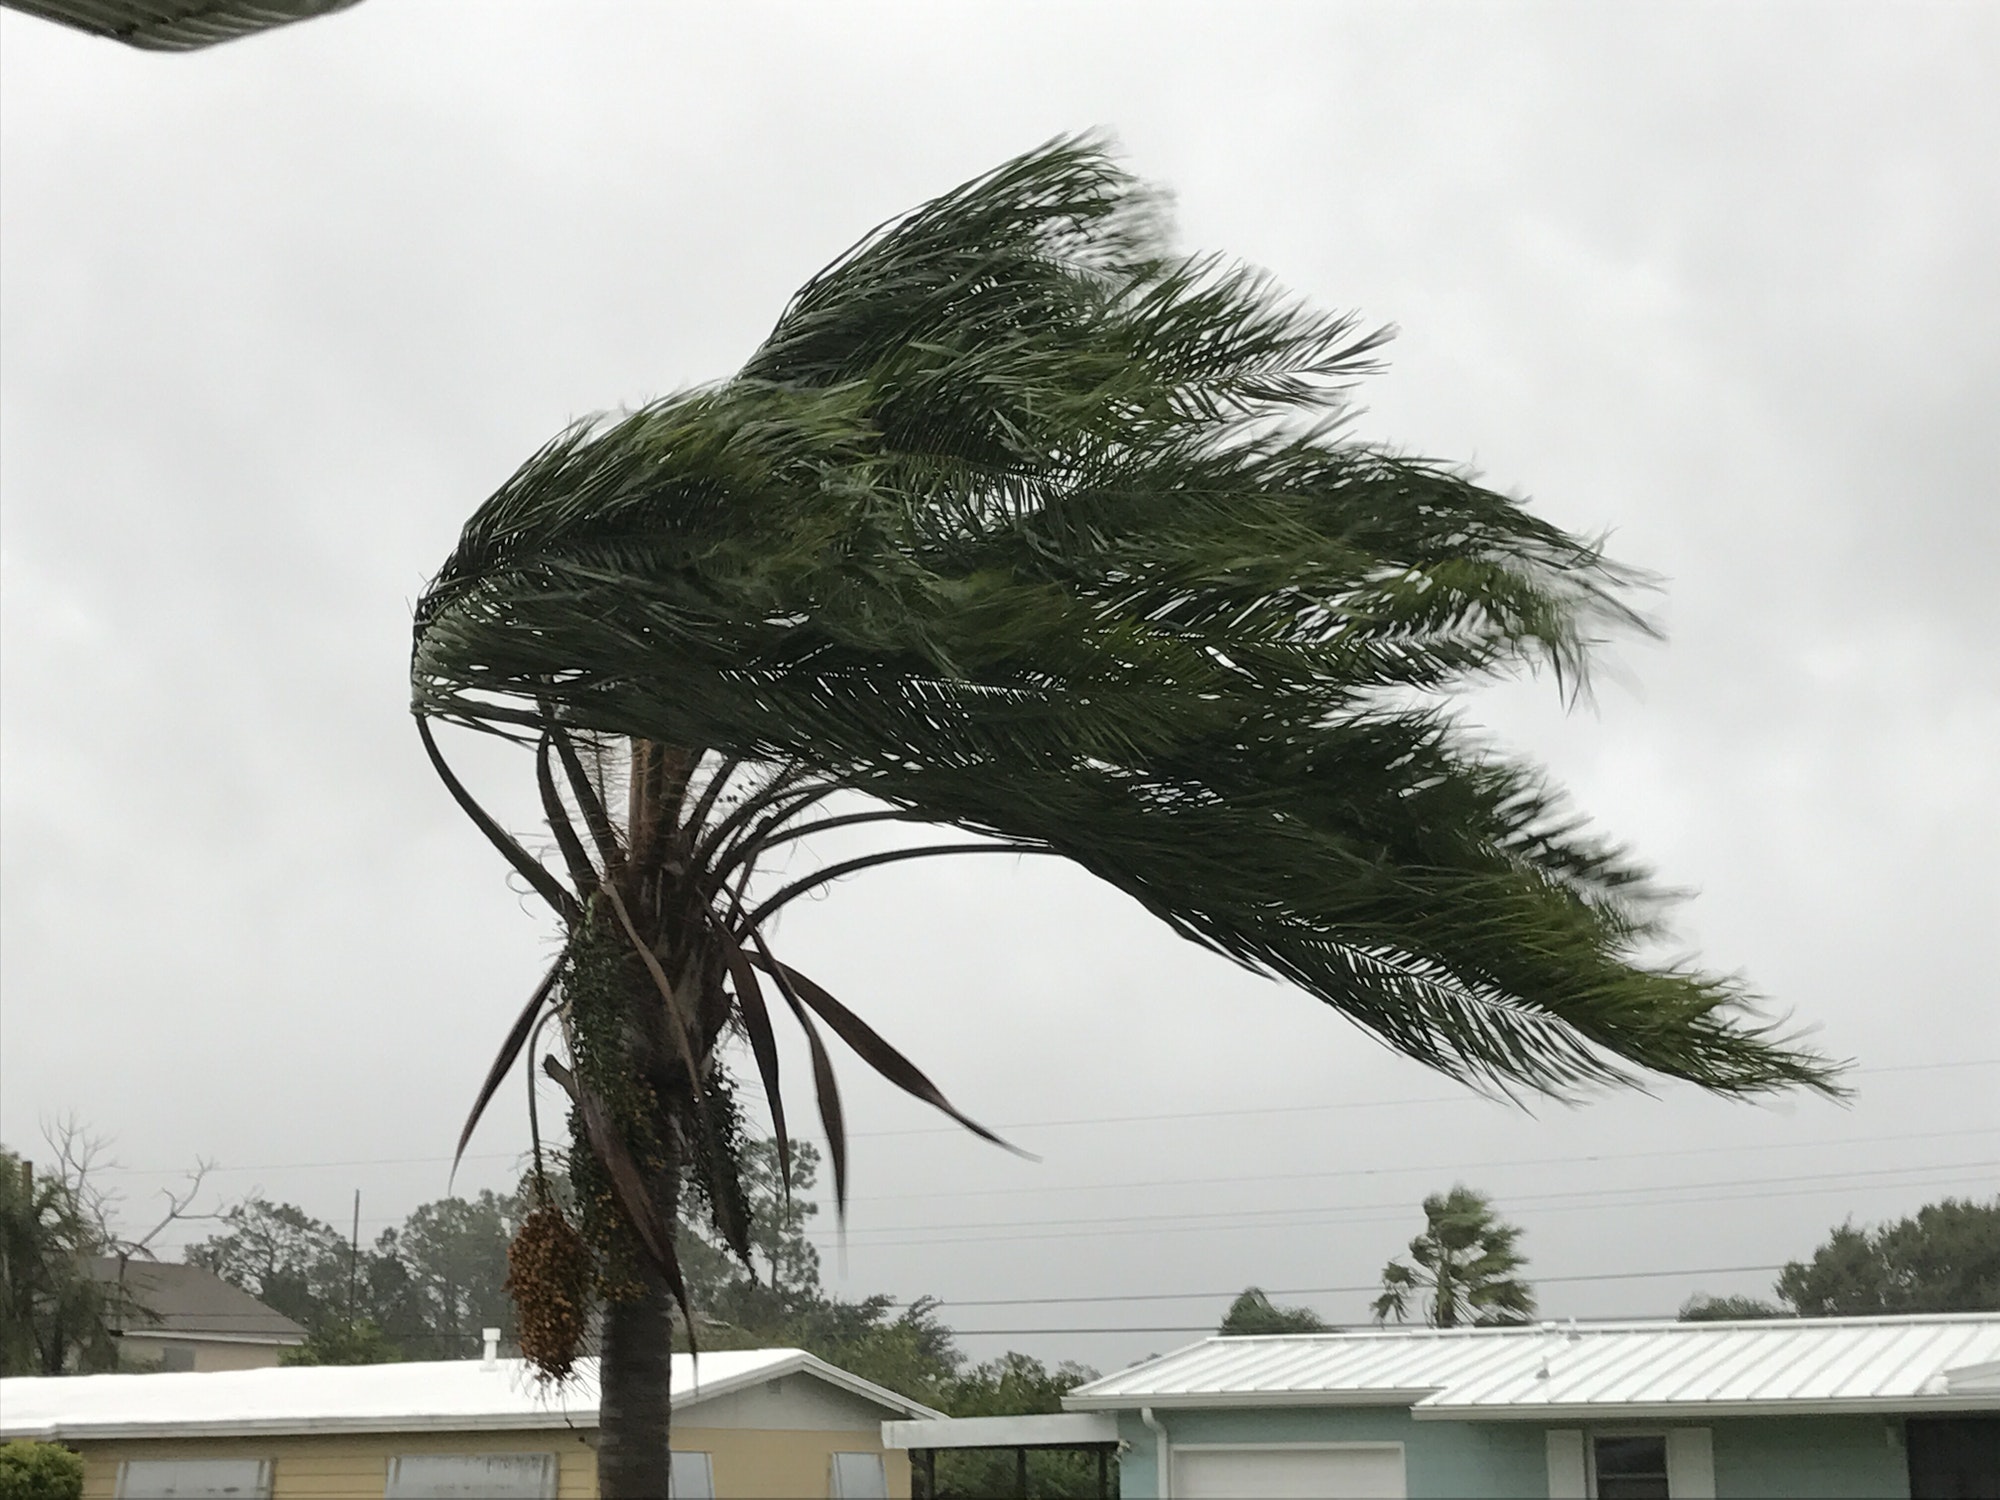 Hurricane winds